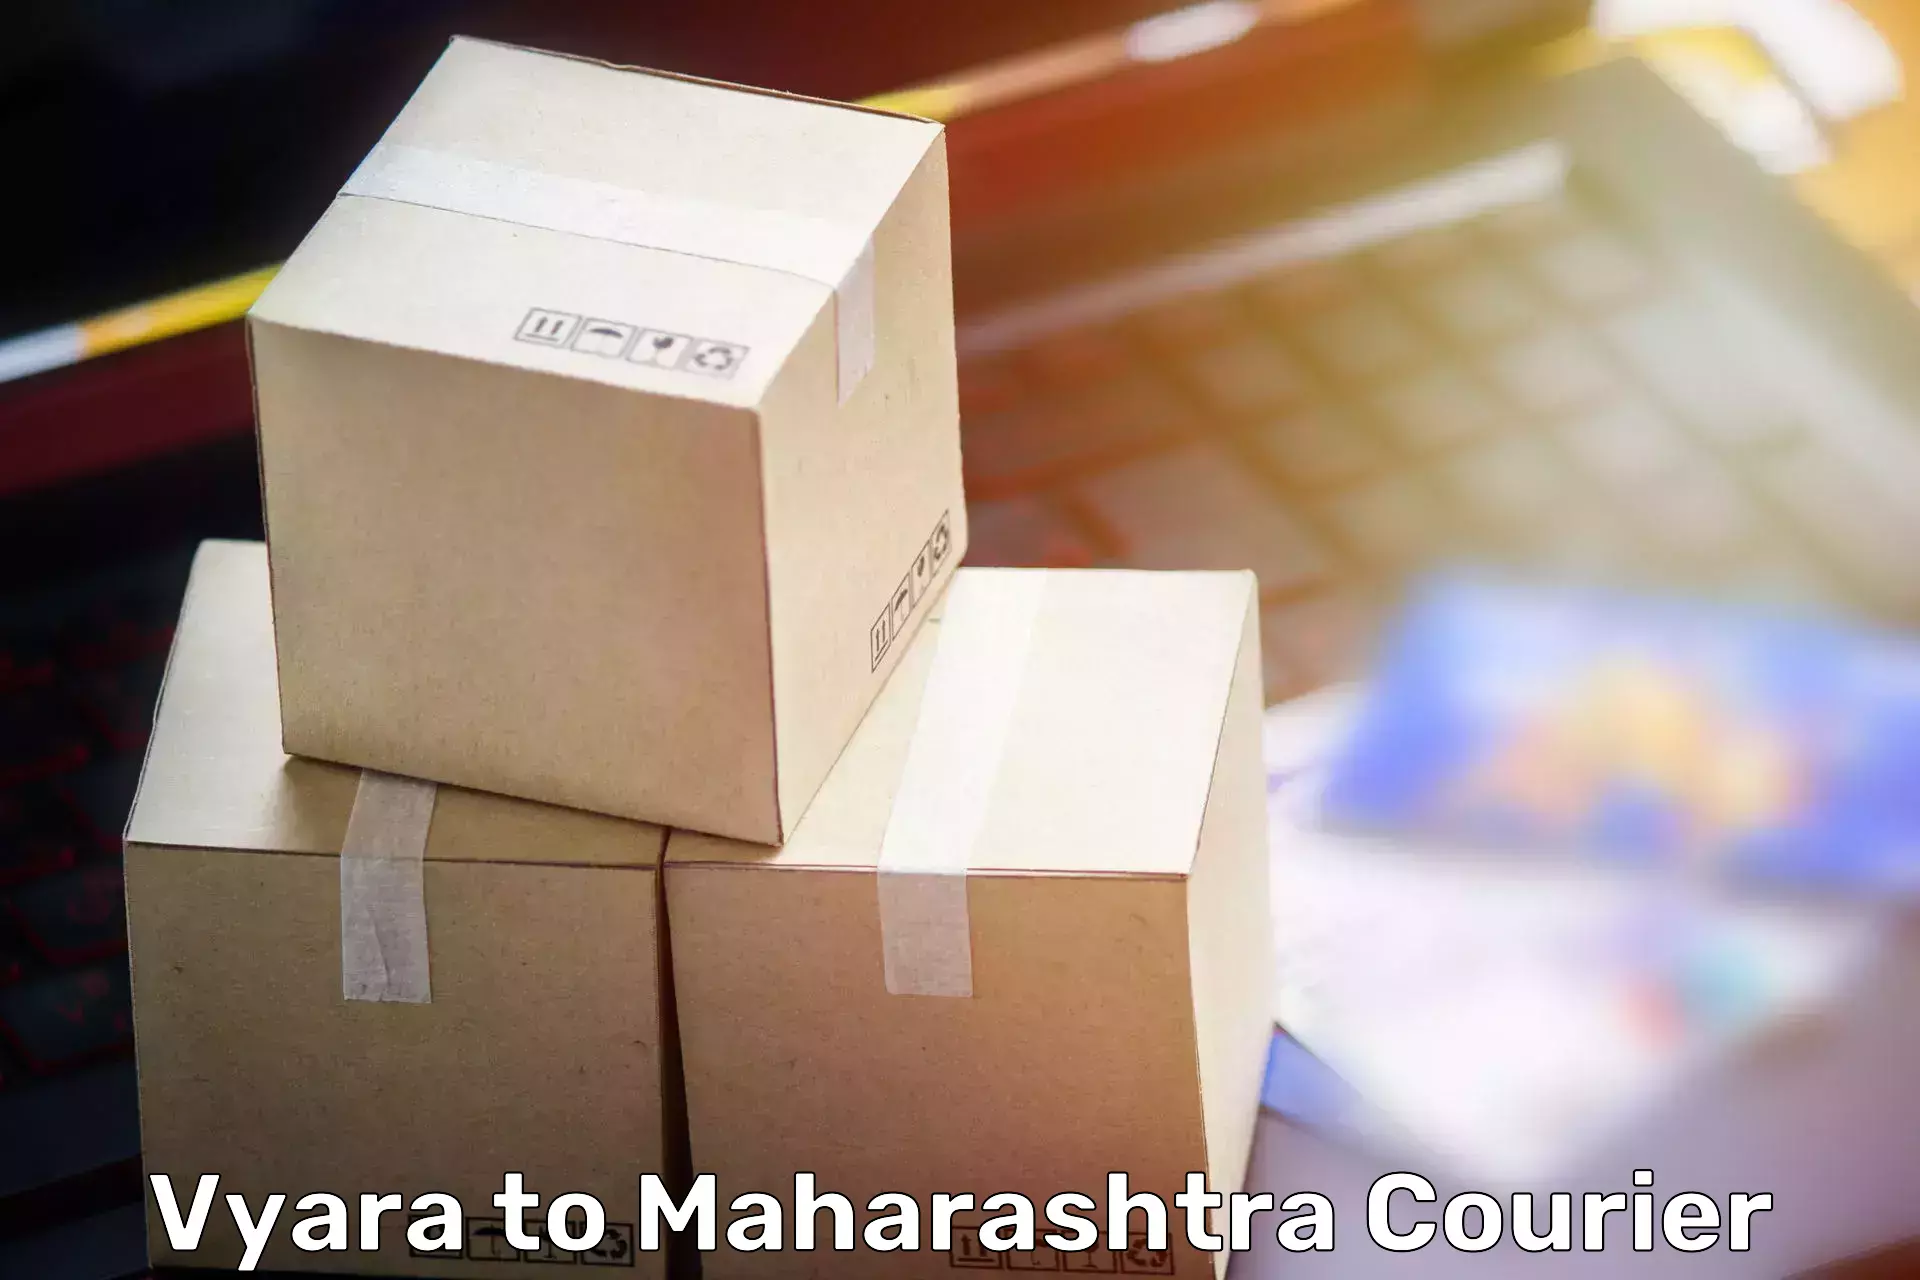 Moving and packing experts Vyara to Kannad